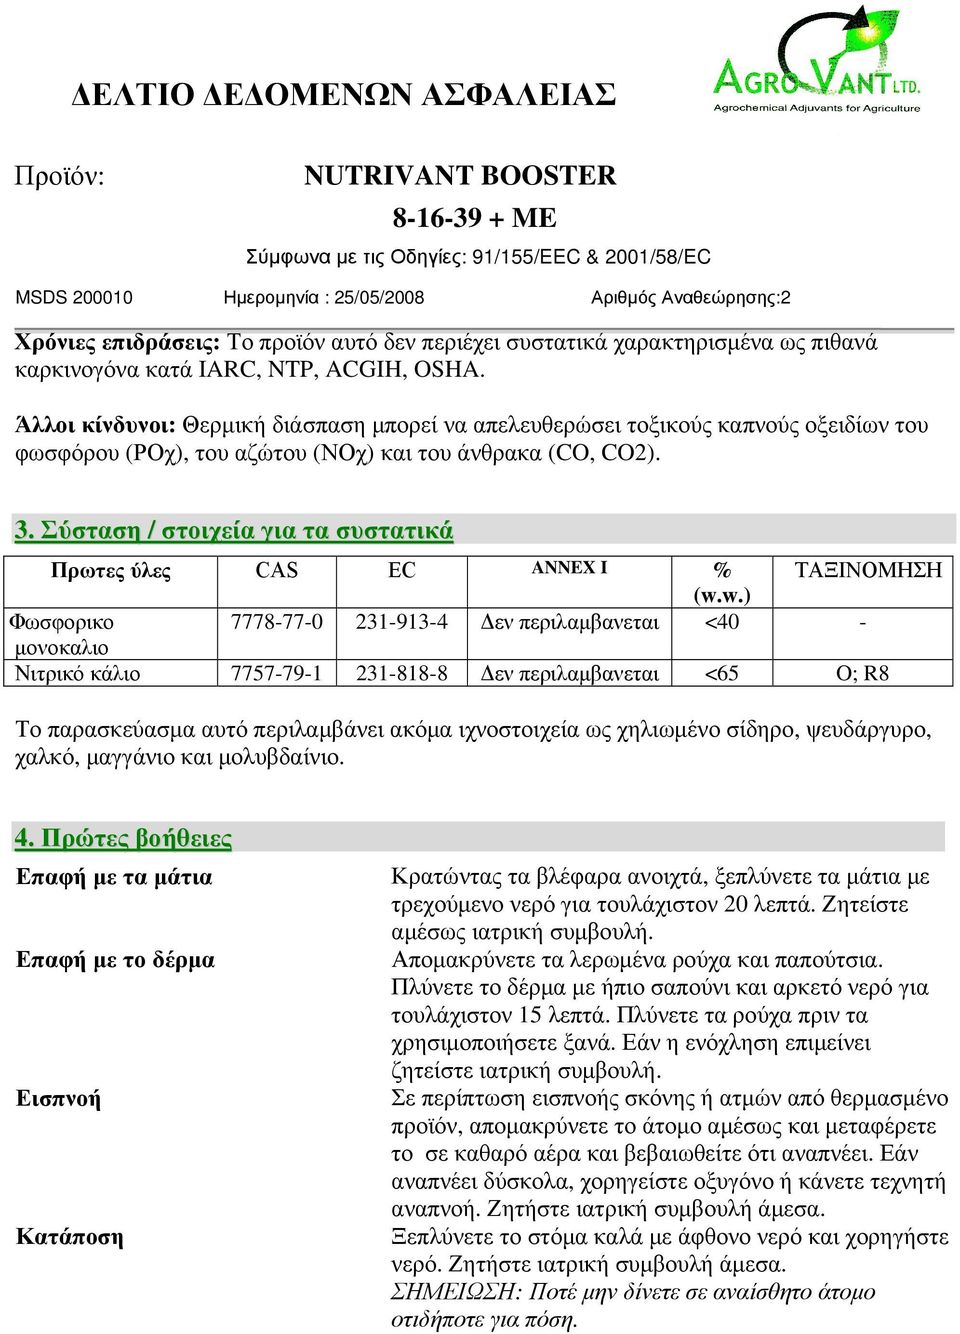 Σύσταση / στοιχεία για τα συστατικά Πρωτες ύλες CAS EC ANNEX I % ΤΑΞΙΝΟΜΗΣΗ (w.